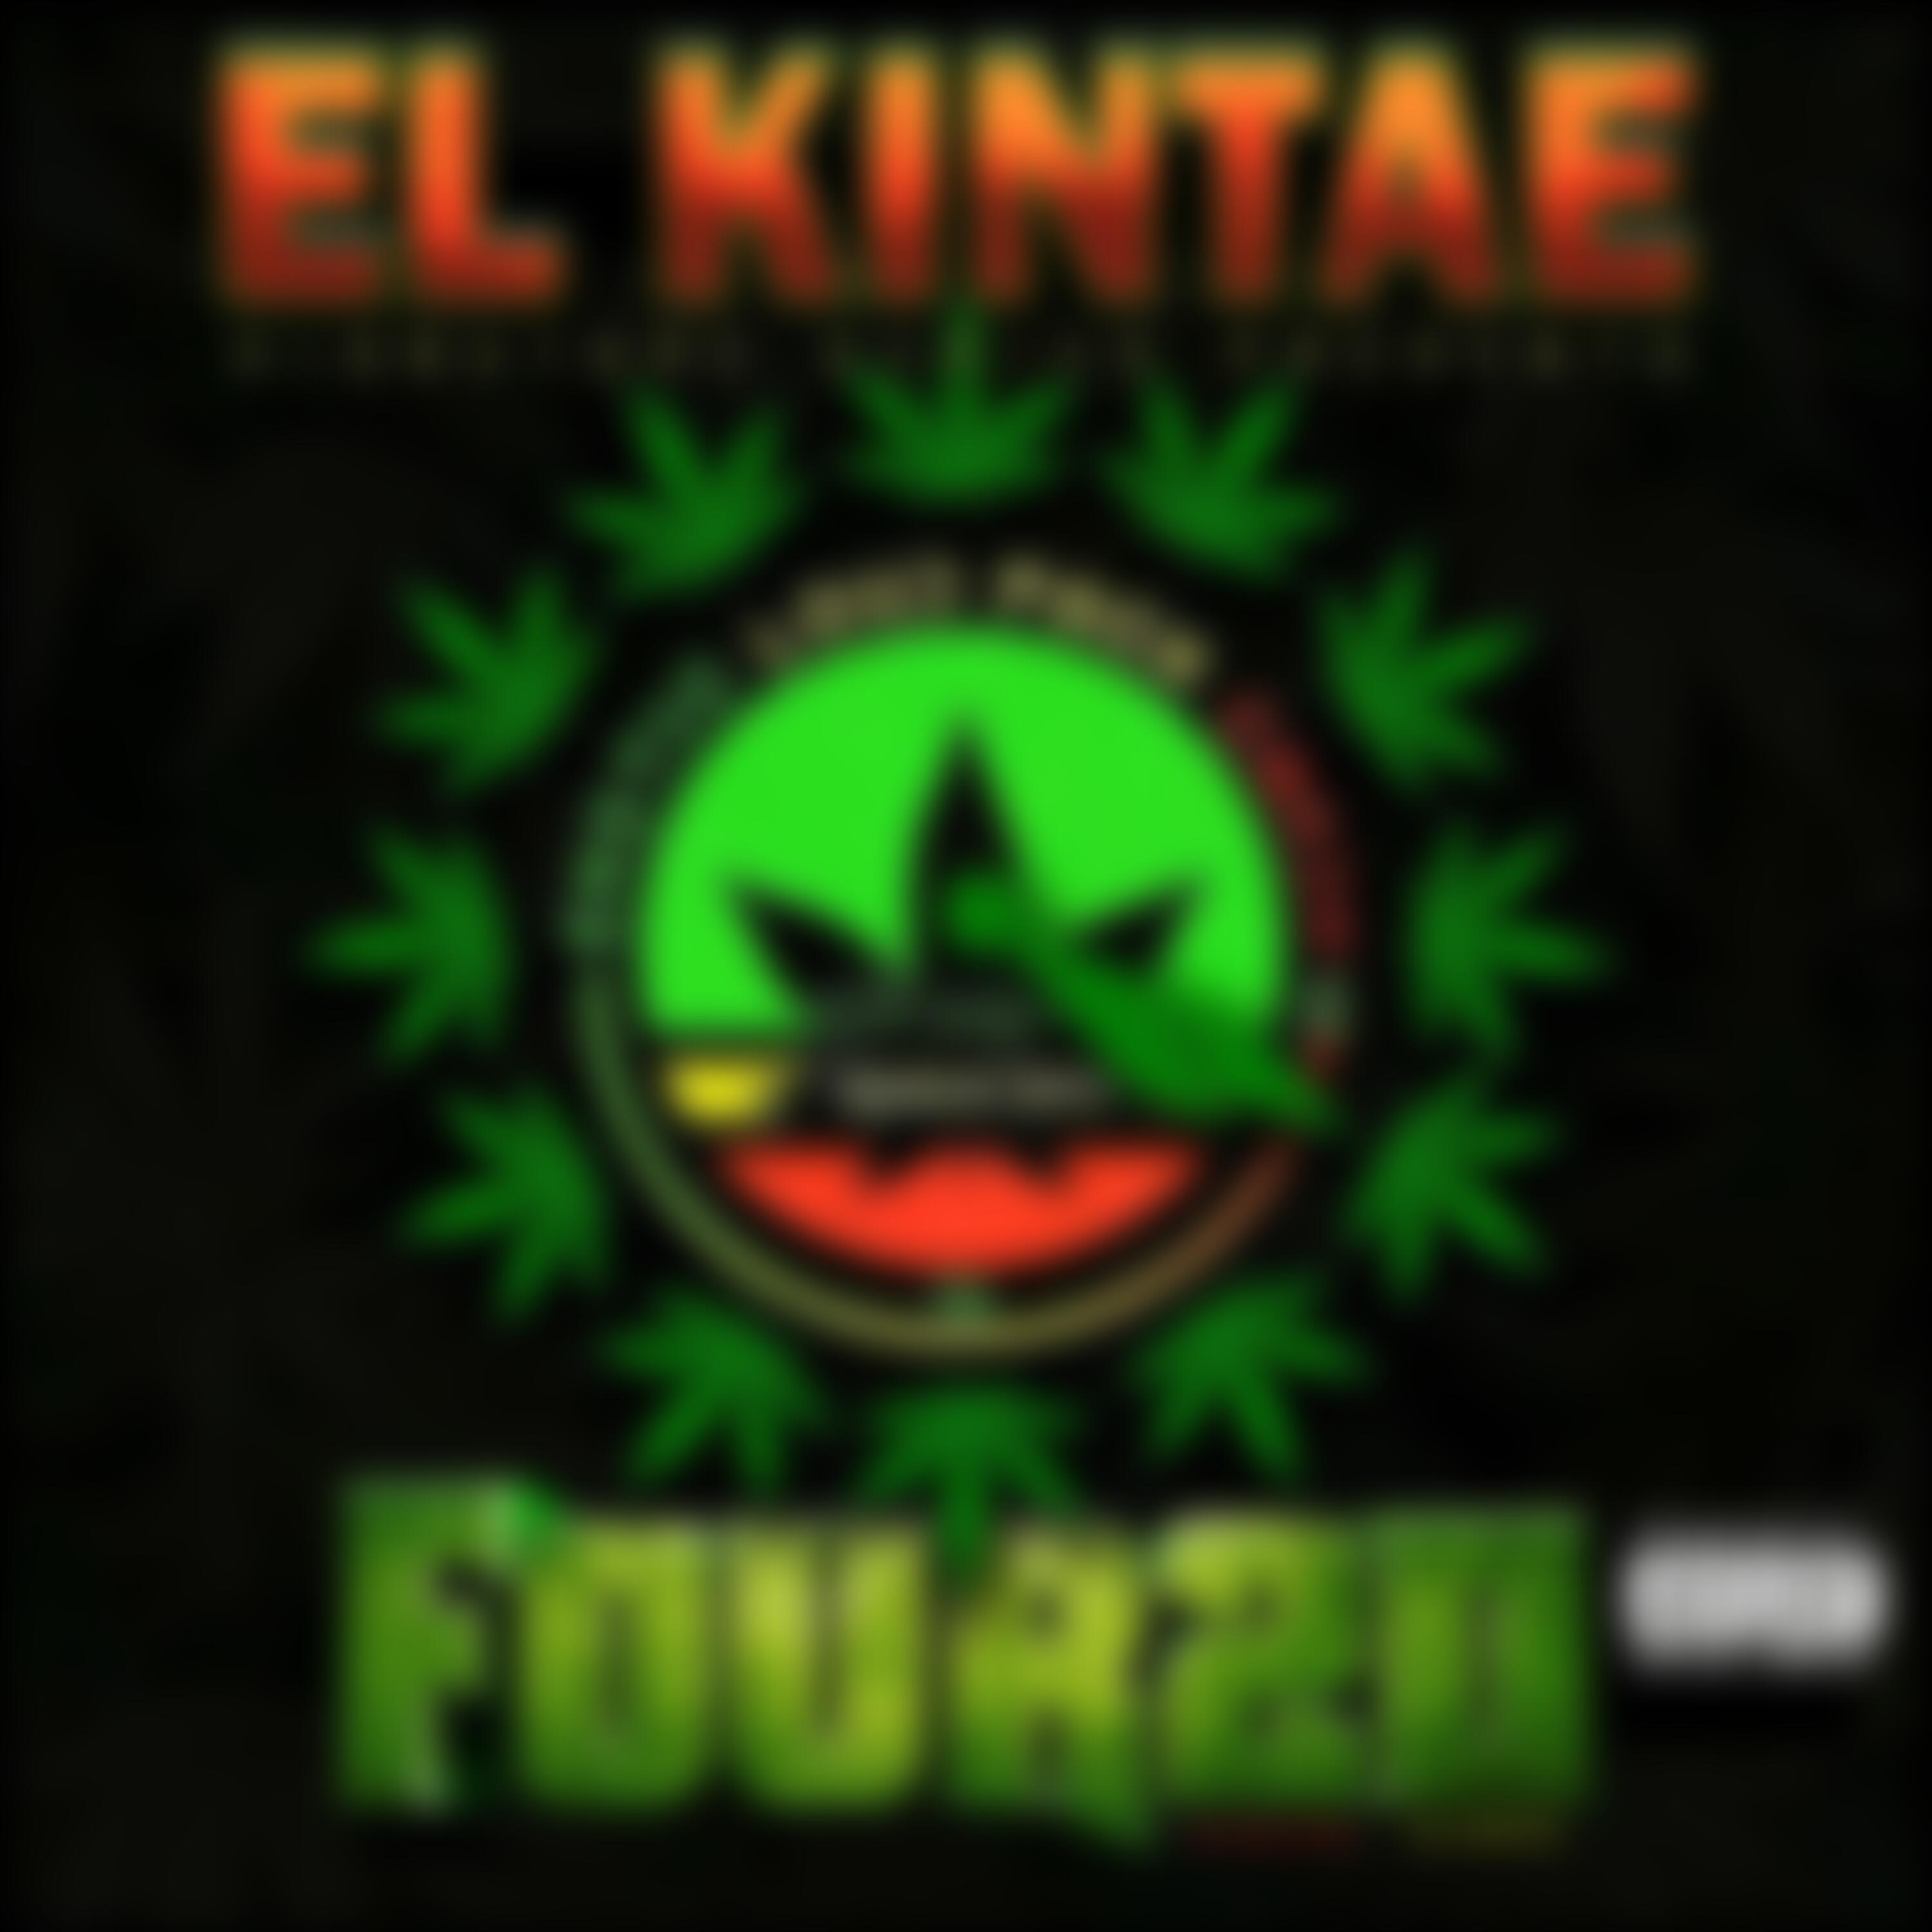 El Kintae - Blowing Big Gas (feat. Maffi)